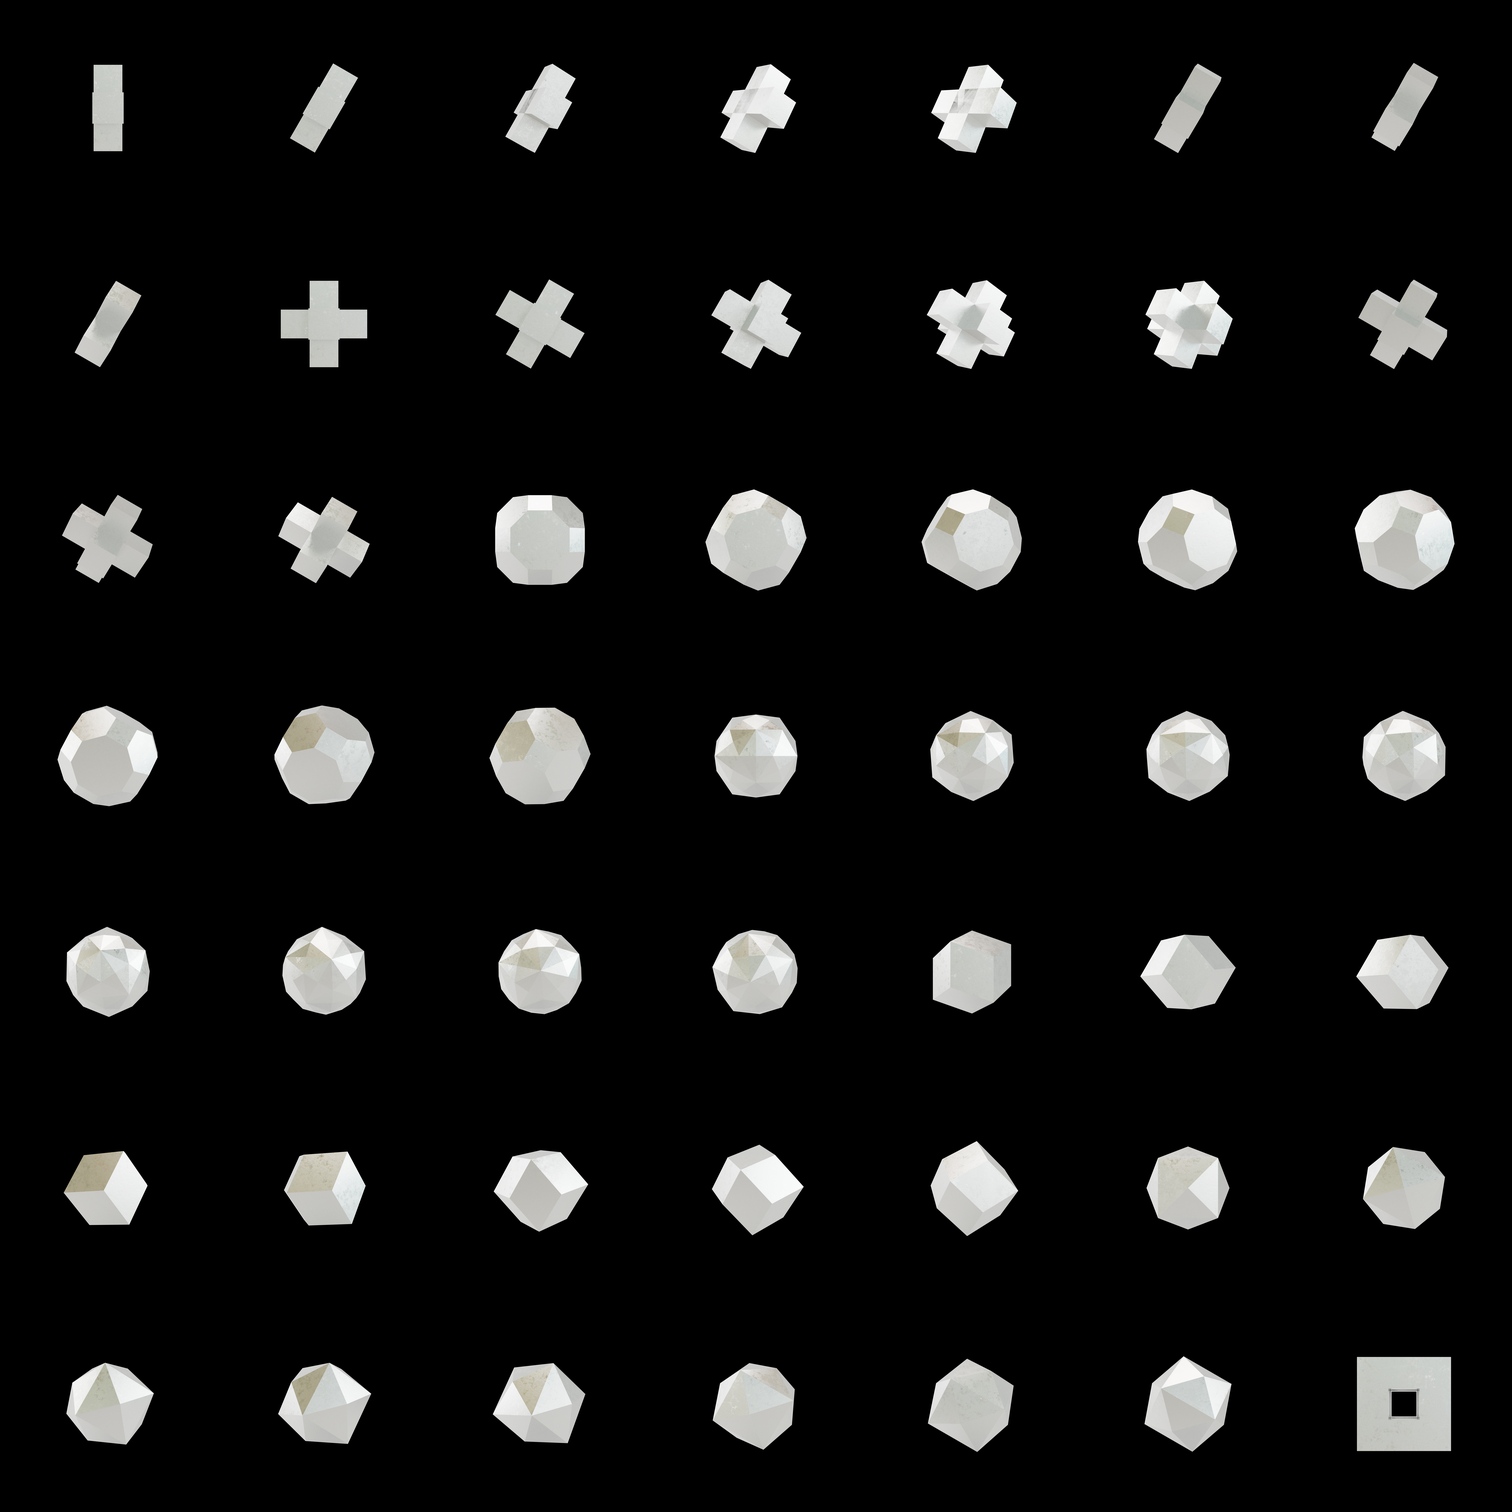 The Bundle - cmp.subtle-imperfections/b tile image 1